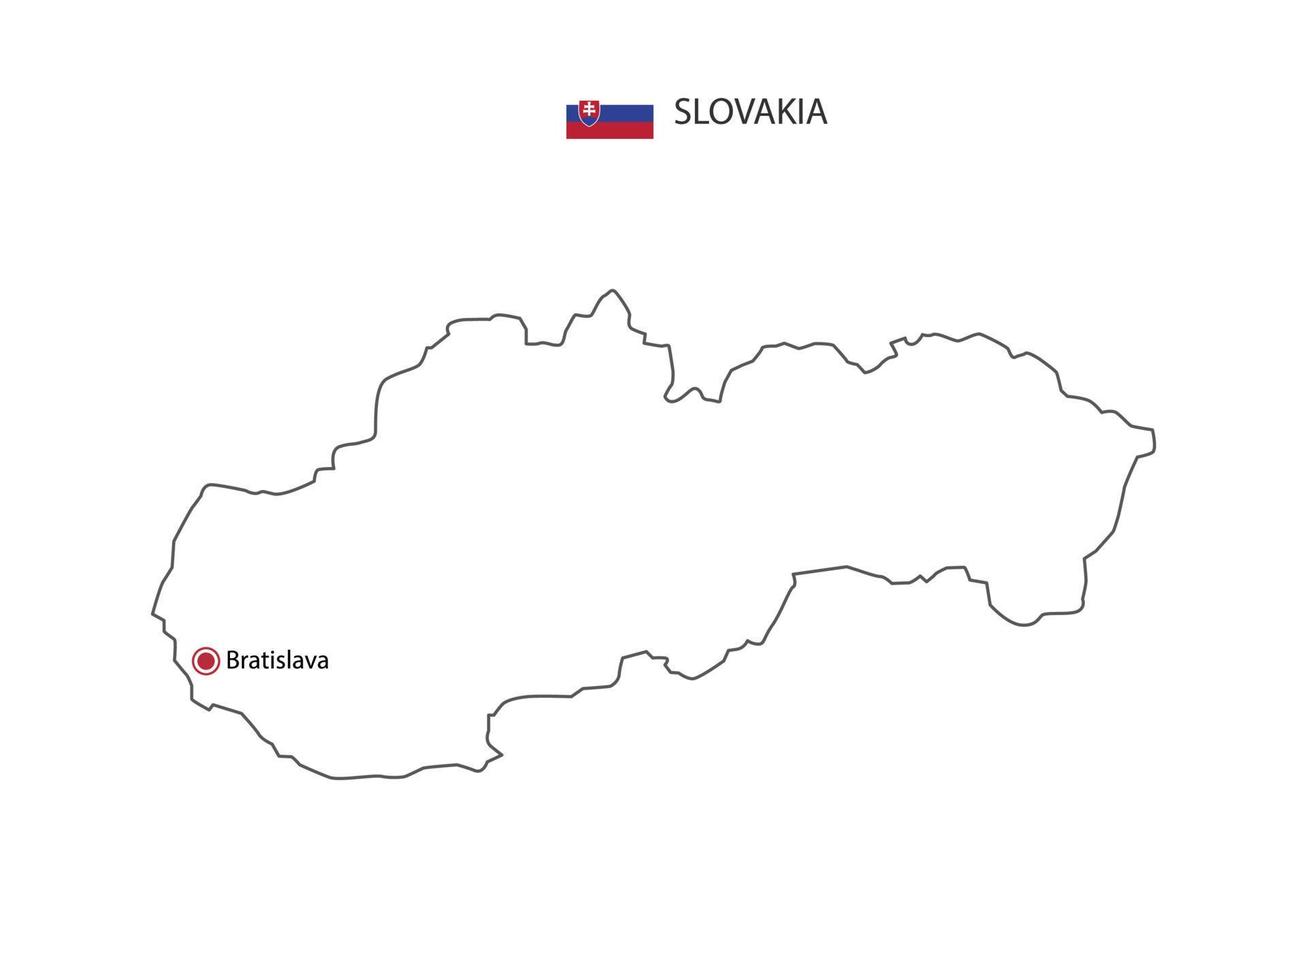 dessinez à la main un vecteur de ligne noire mince de la carte de la slovaquie avec la capitale bratislava sur fond blanc.